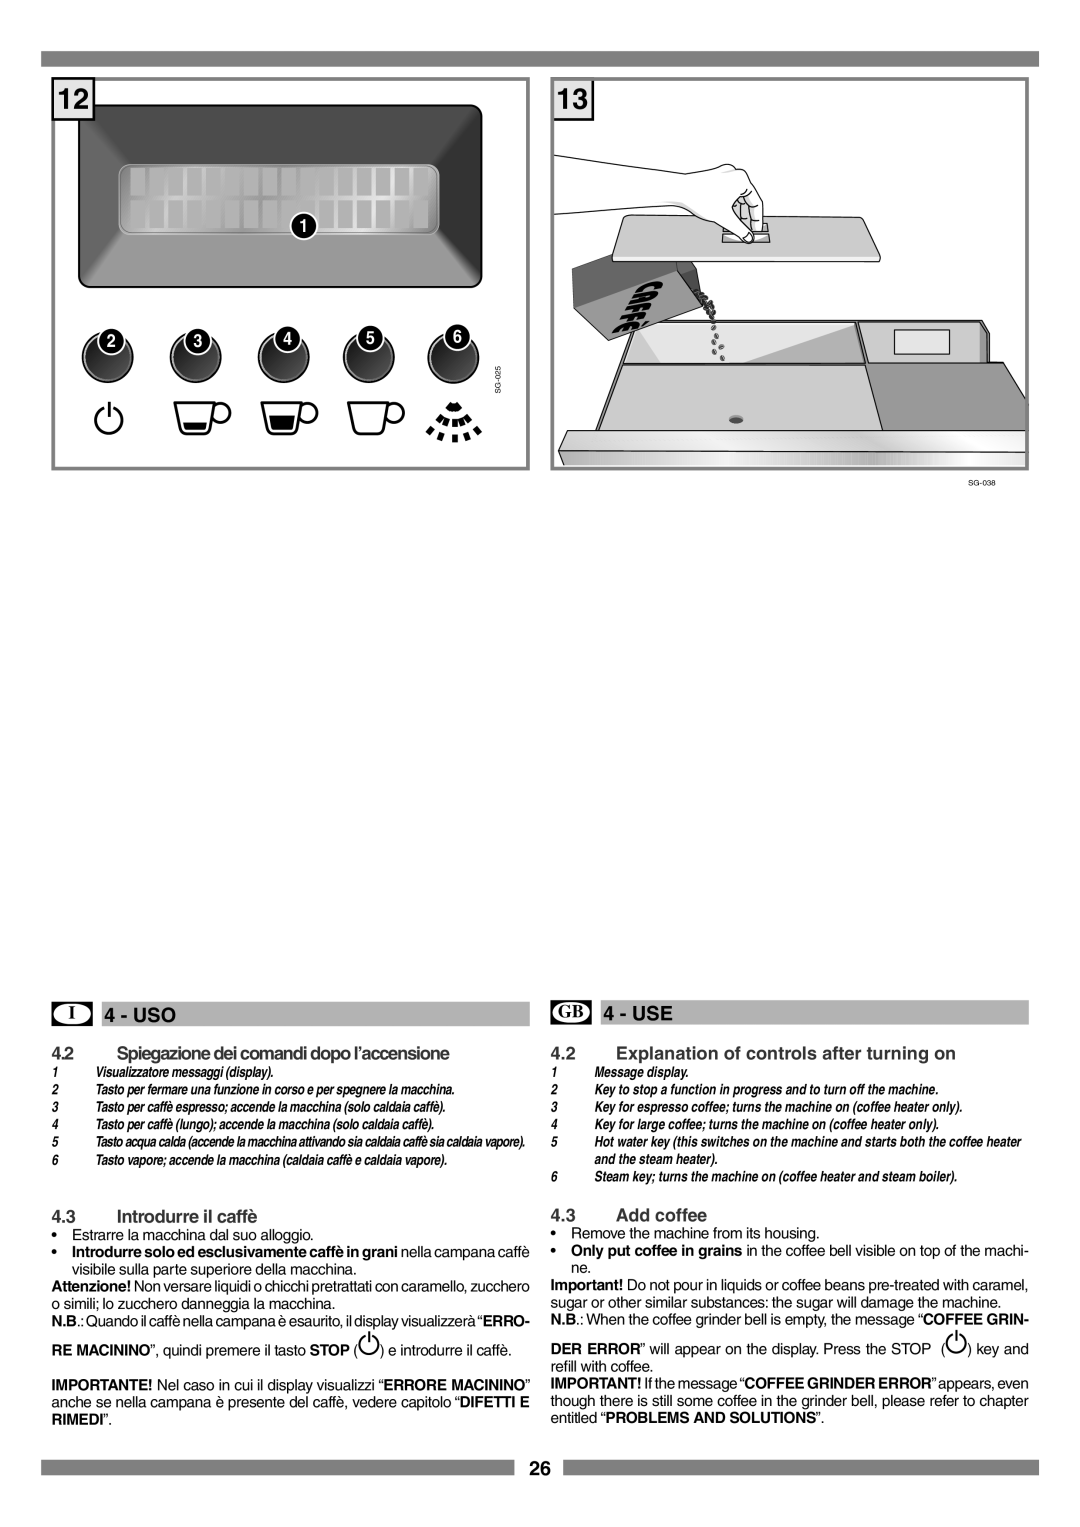 Smeg SCM1 manual Spiegazione dei comandi dopo l’accensione, Explanation of controls after turning on, Introdurre il caffè 